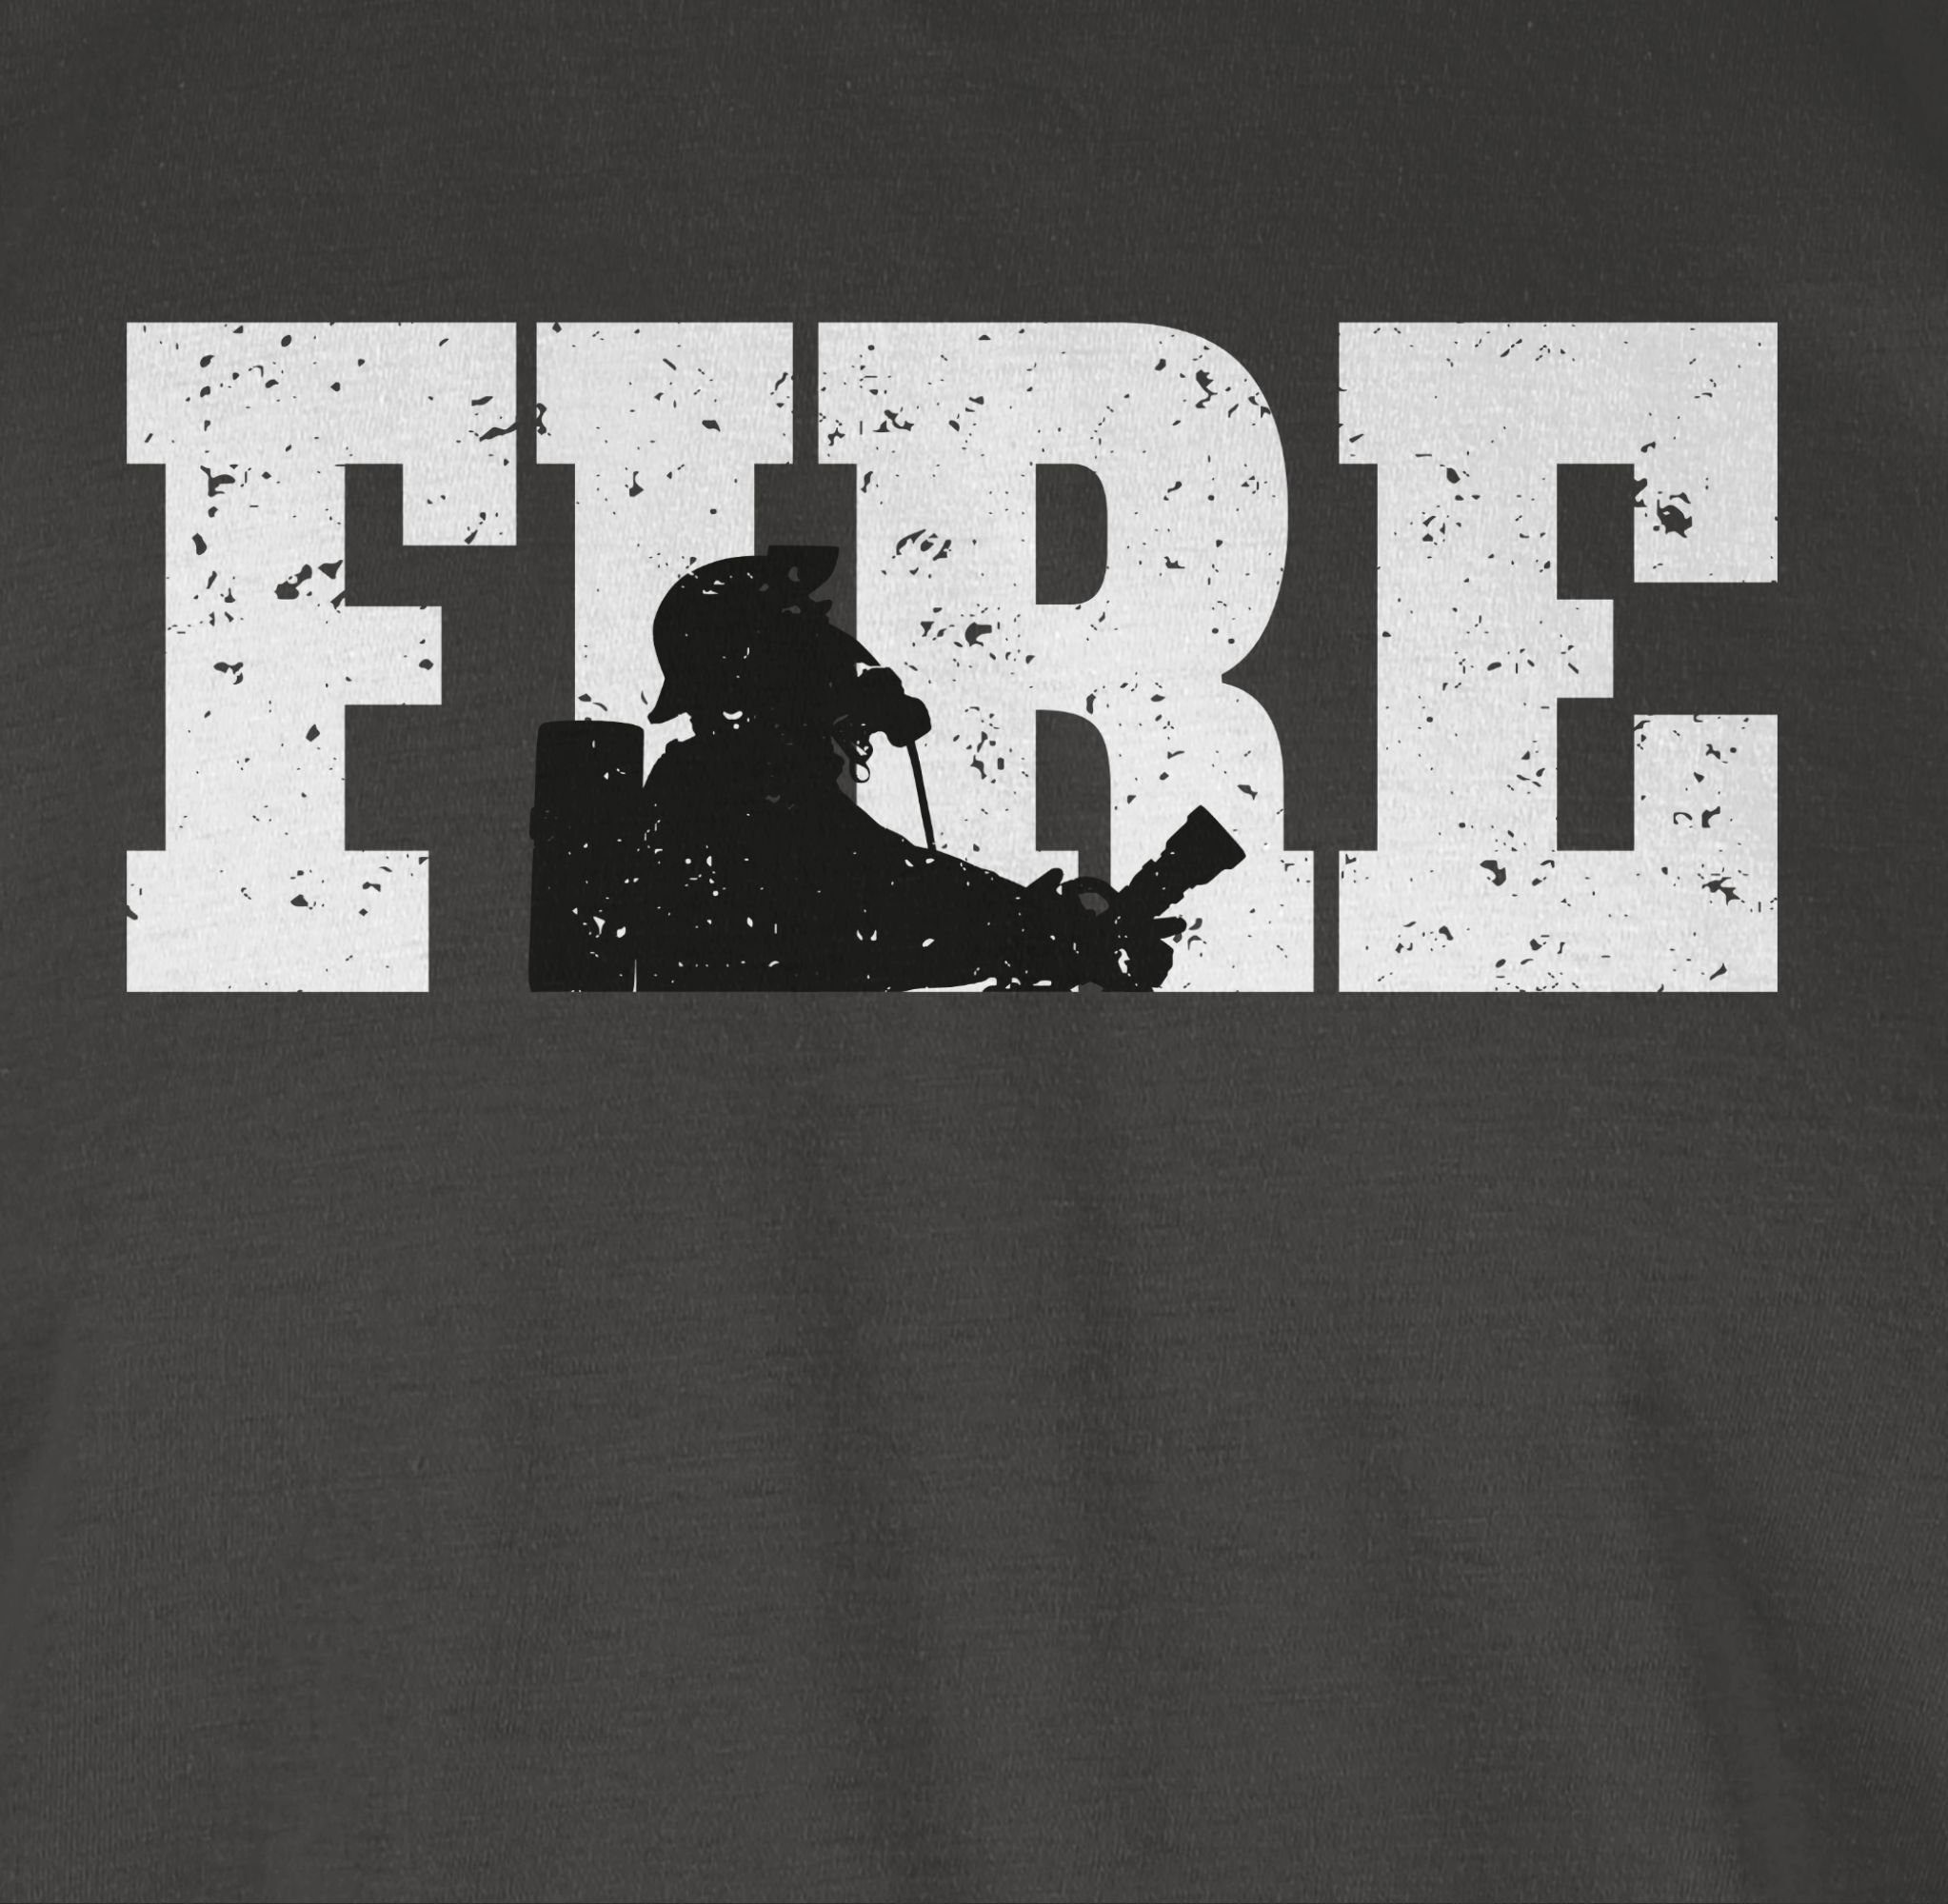 Shirtracer T-Shirt Fire Feuerwehr 1 Dunkelgrau